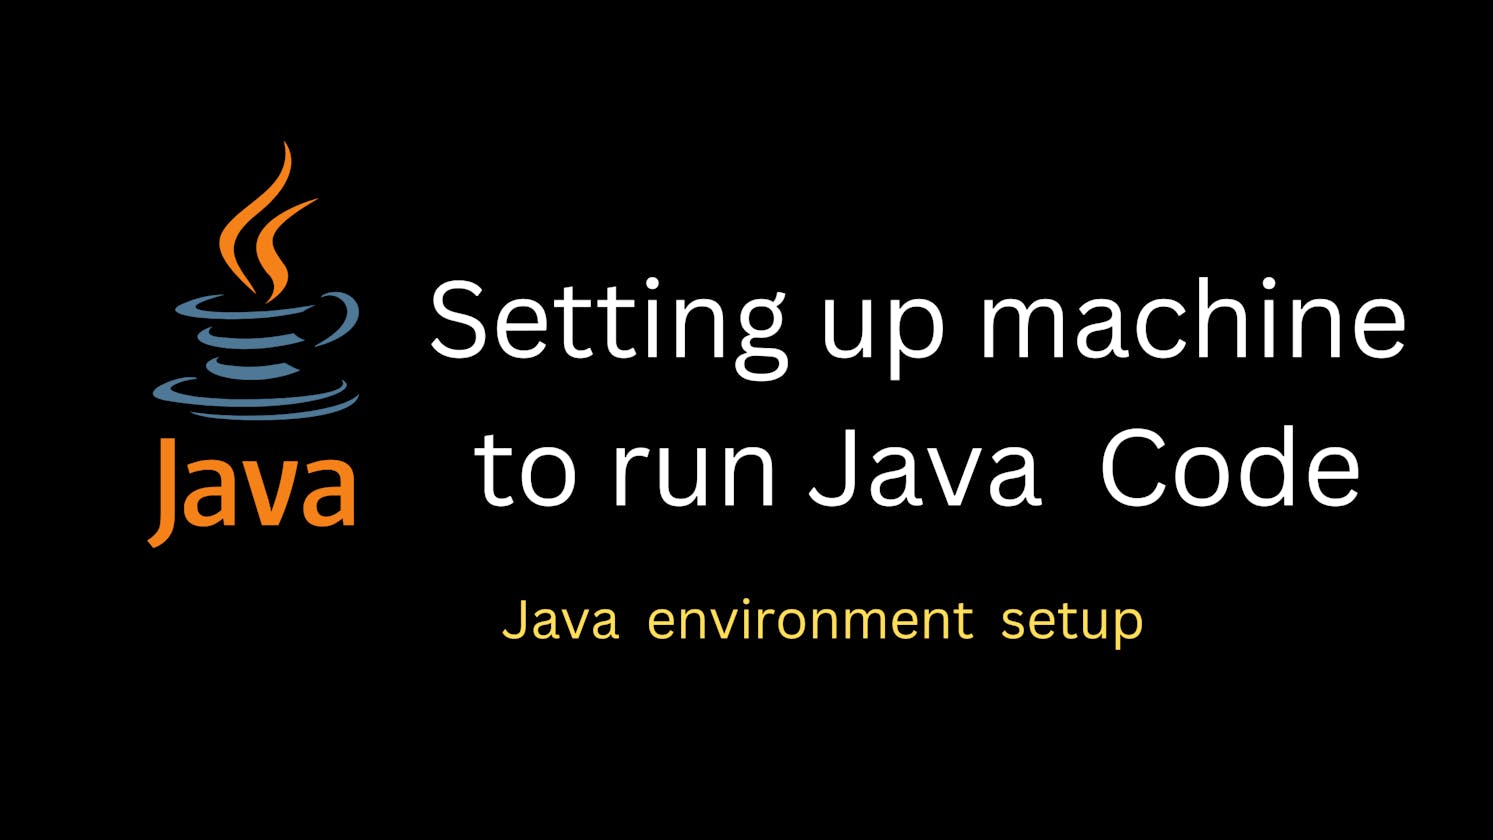 Setting up your machine to run Java Code